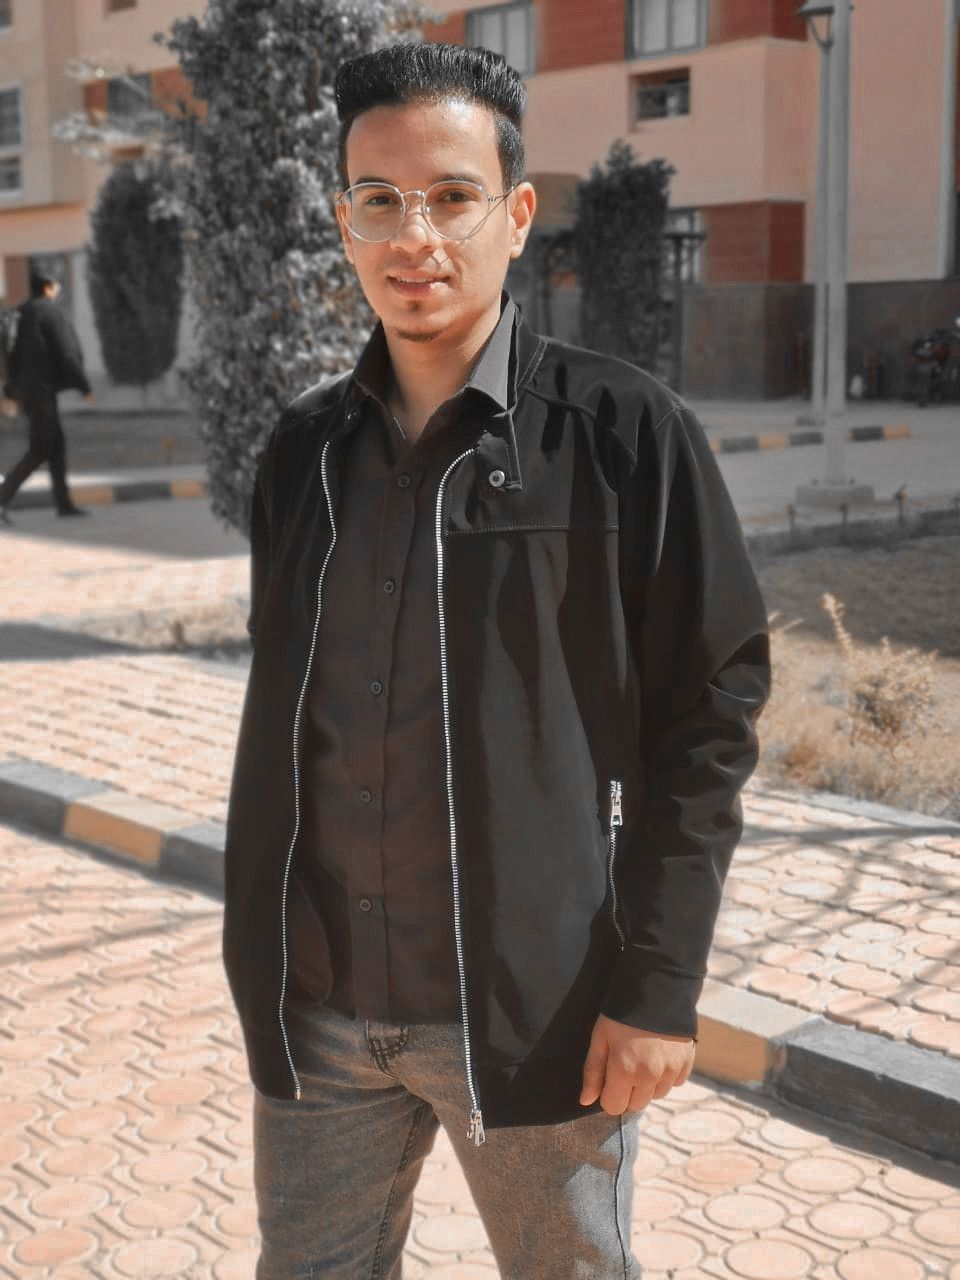 Abdallah Elahmerのプロフィール画像